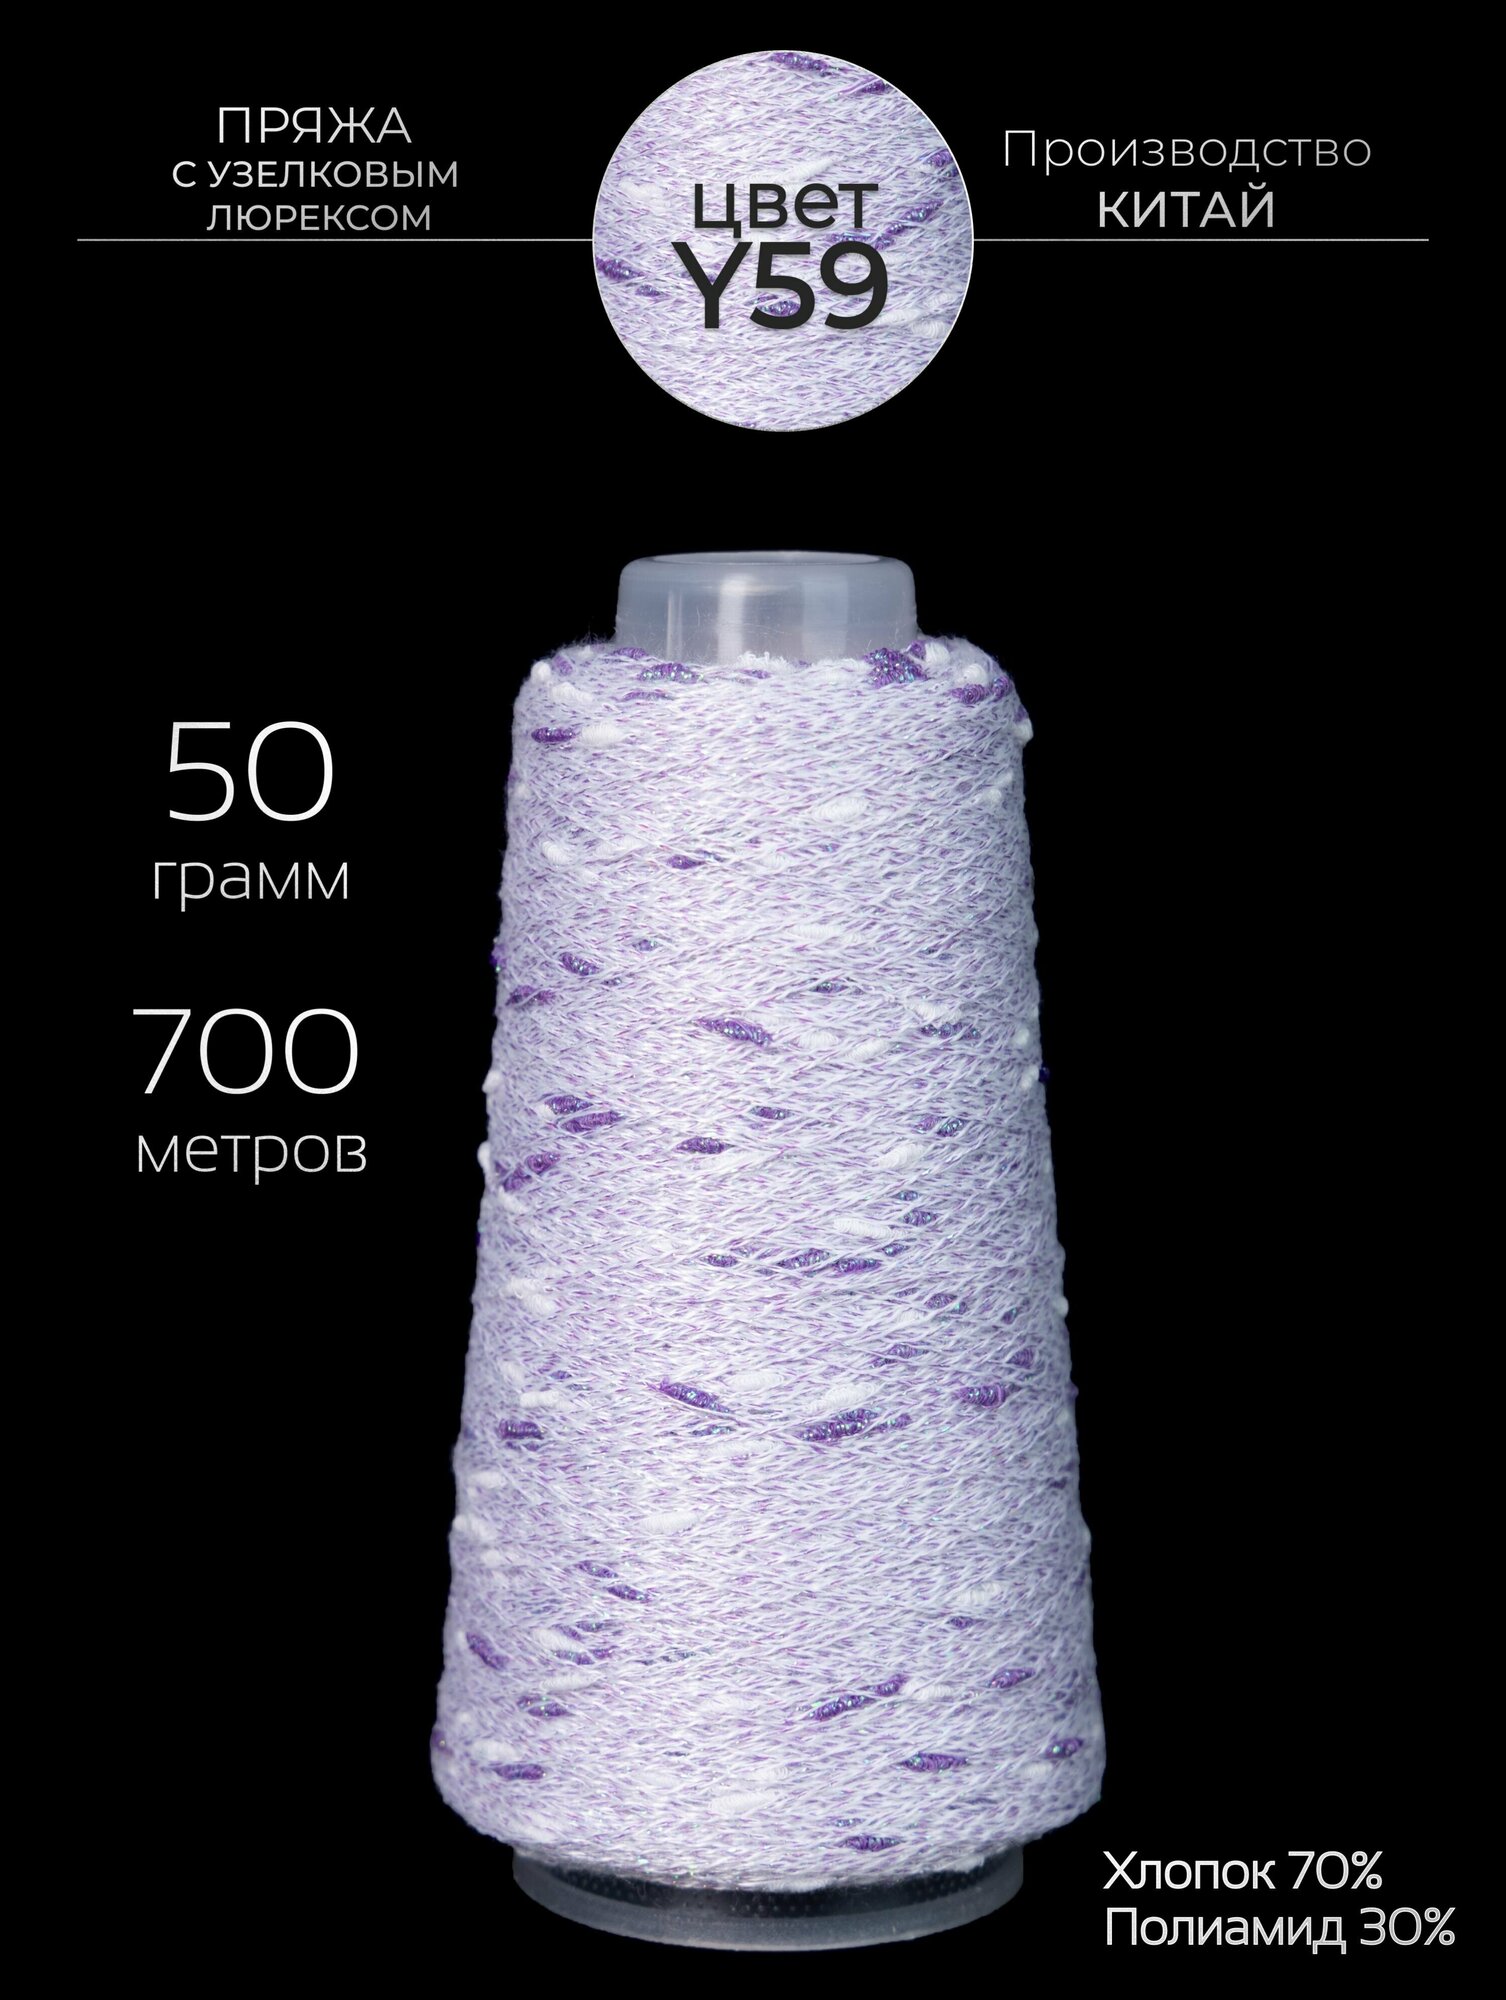 Пряжа для вязания узелковый люрекс с шишечками - шишибрики, из хлопка и люрекса, 50 грамм - 700 метров.